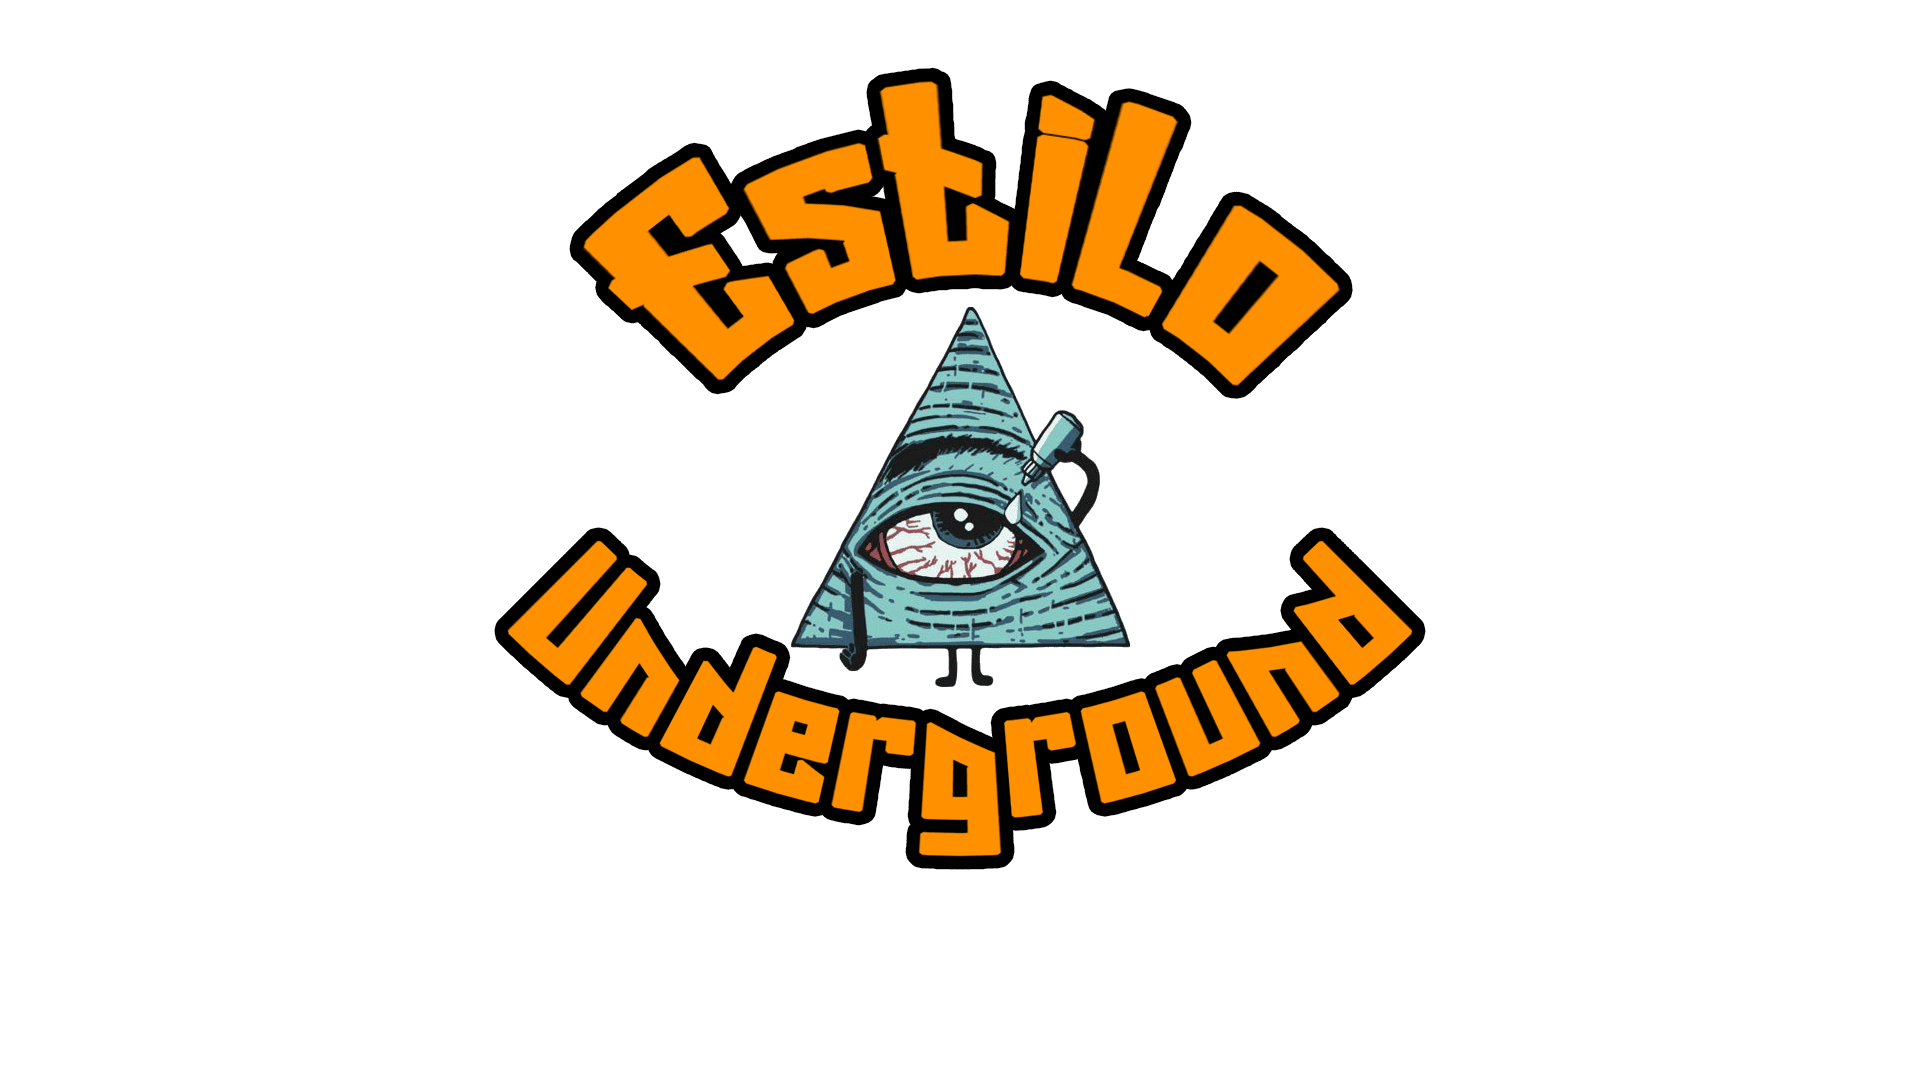 Estilo Underground